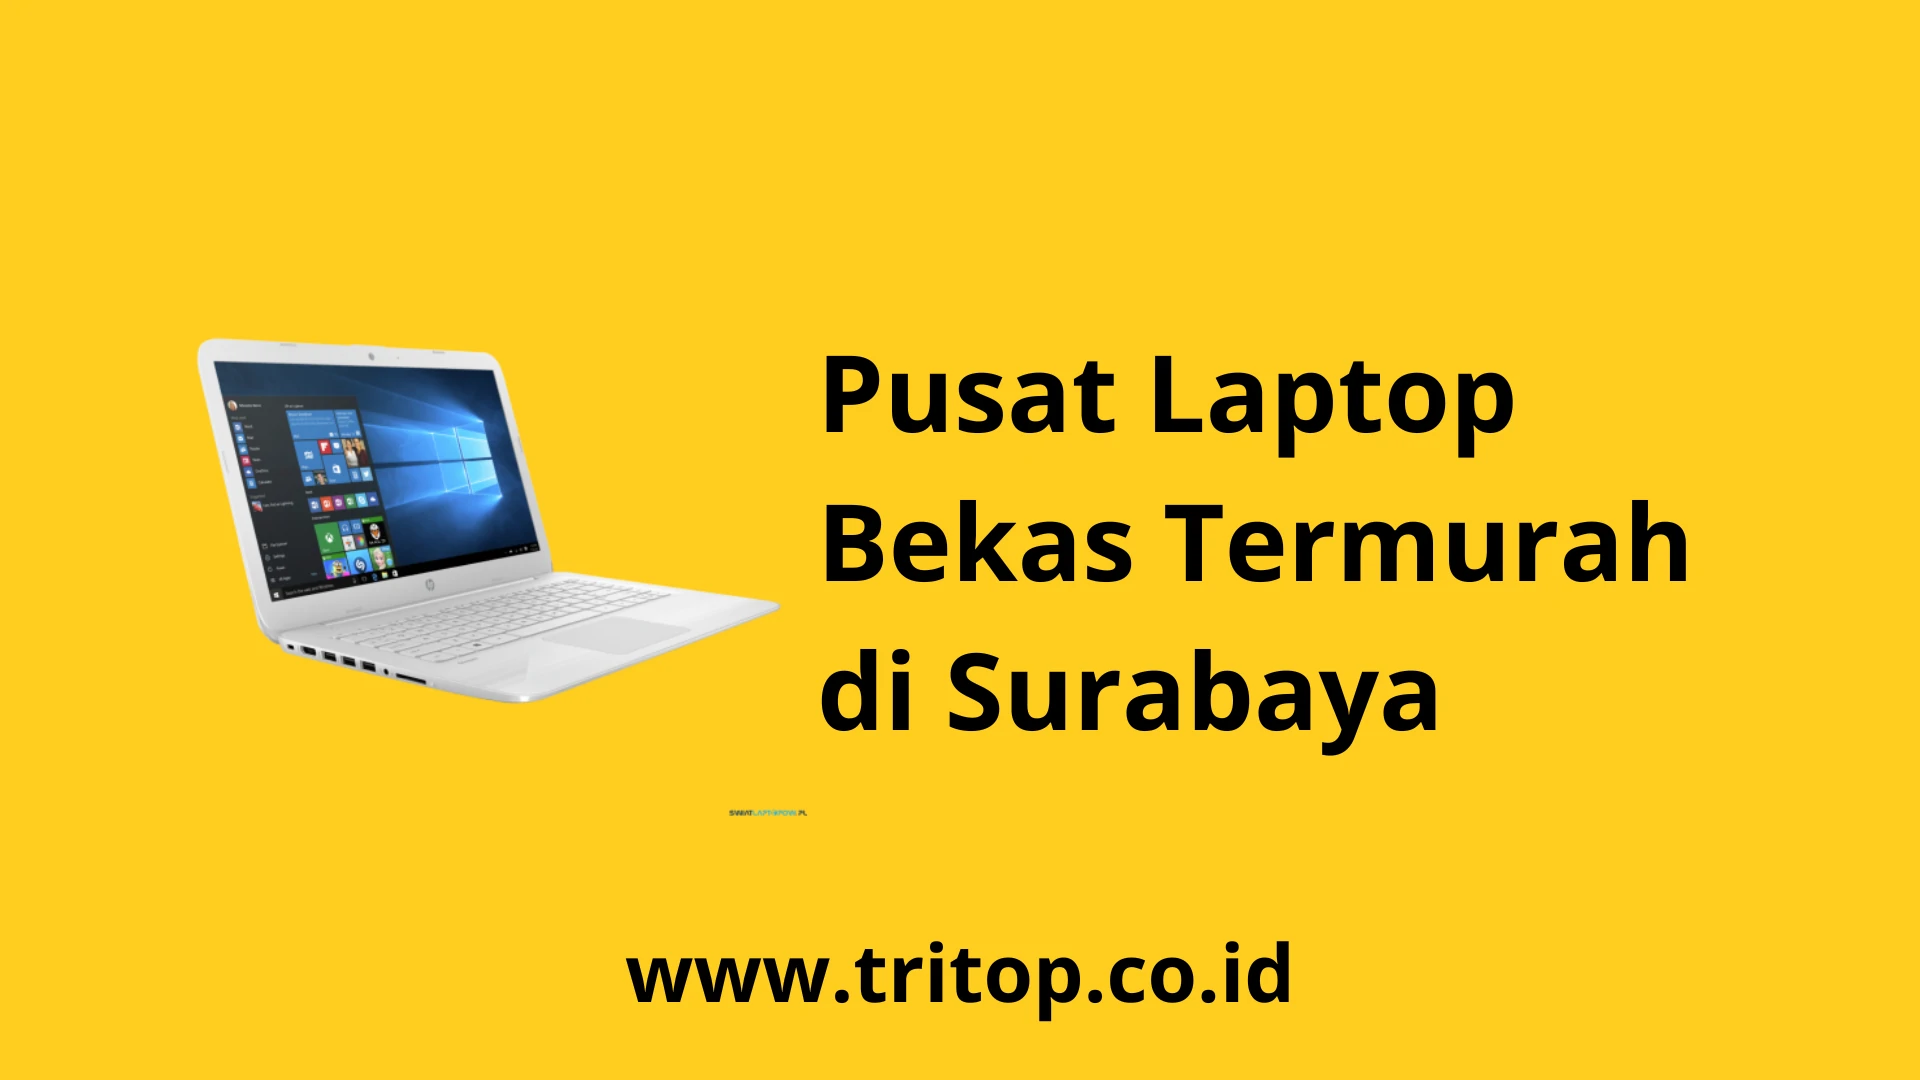 Pusat Laptop Bekas Surabaya www.tritop.co.id